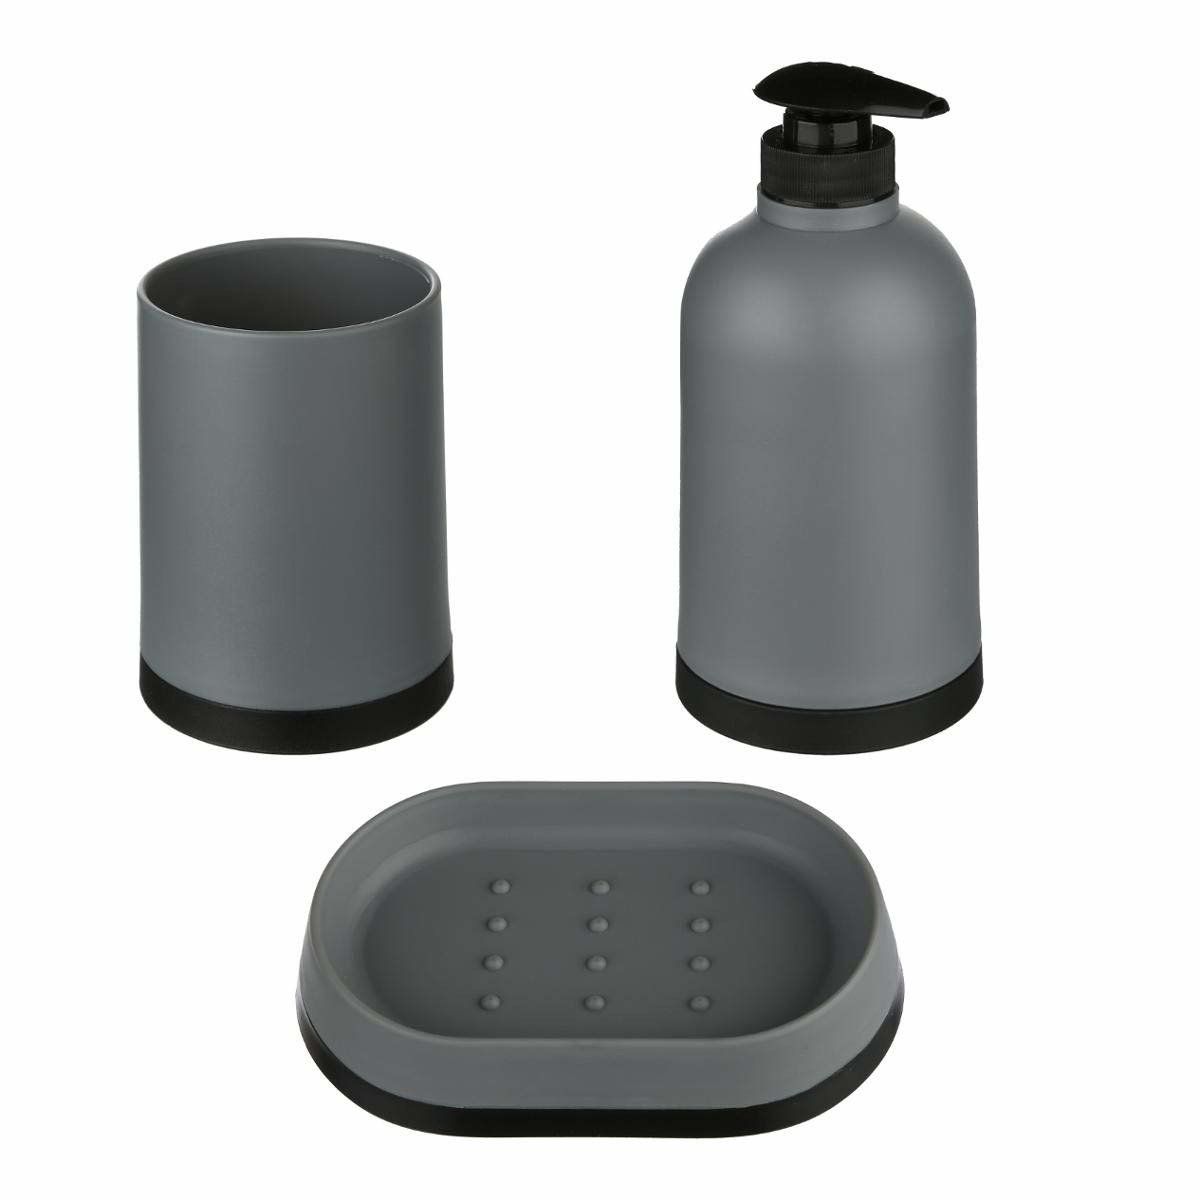 5five Simple Smart Plastové koupelnové doplňky v šedé barvě, 7,4x16 cm - EMAKO.CZ s.r.o.